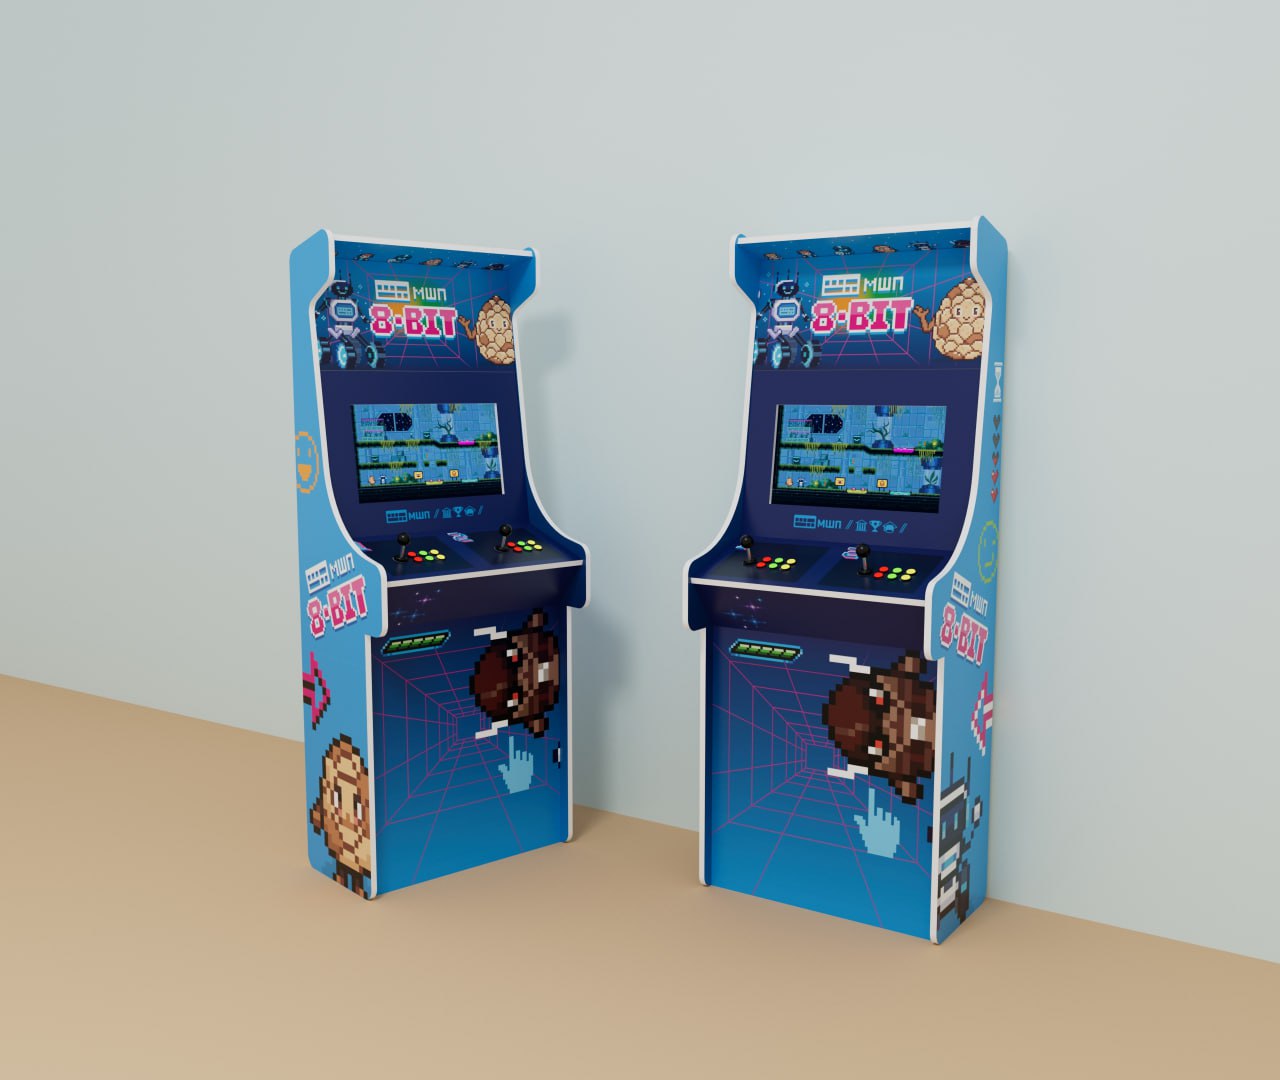 Назад в 80-е: Мы сделали аркадные автоматы со своей 8-bit игрой 2